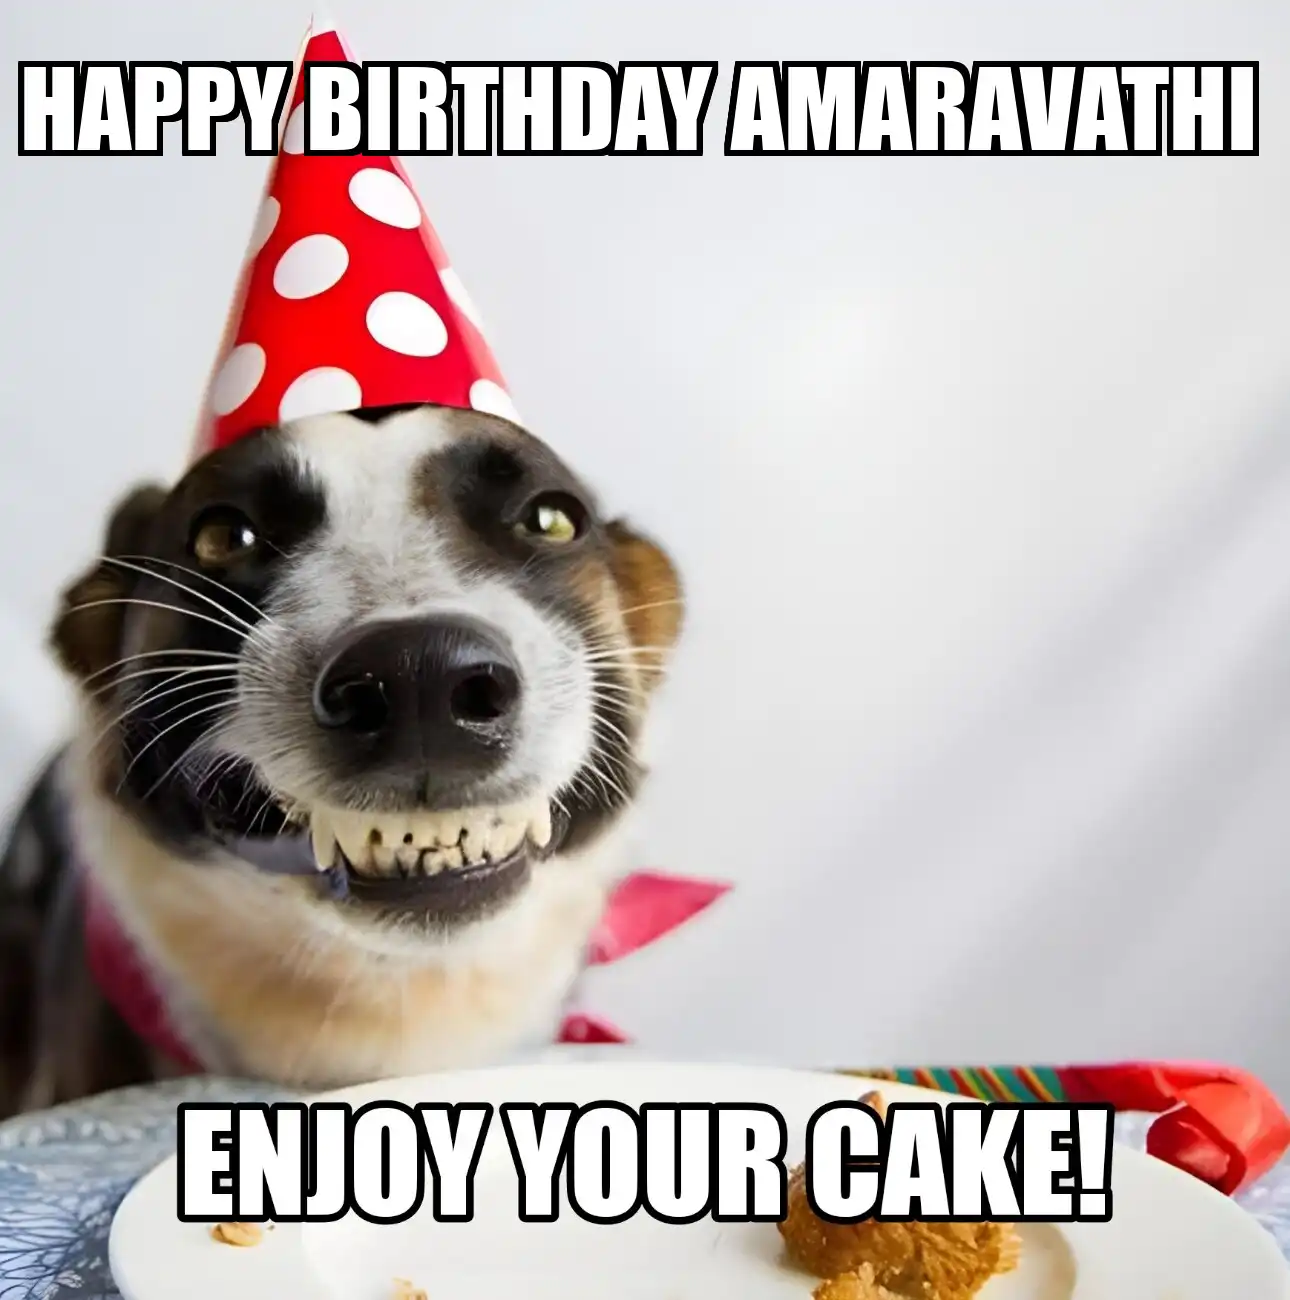 Happy Birthday Amaravathi Enjoy Your Cake Dog Meme